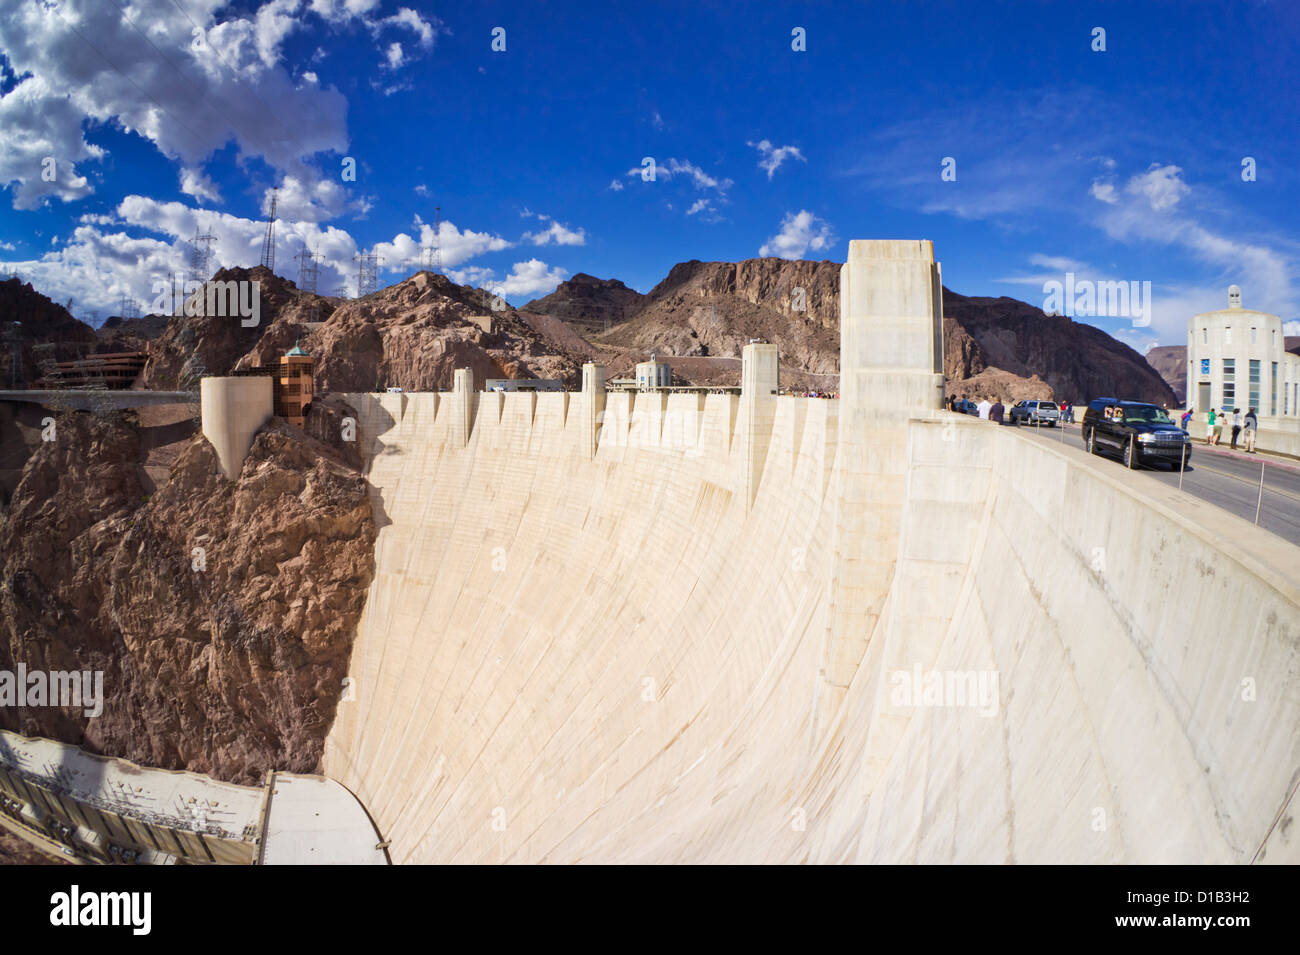 Hoover Dam Hydro-elektrische Stromerzeugung Damm Arizona AZ Vereinigte Staaten von Amerika Stockfoto